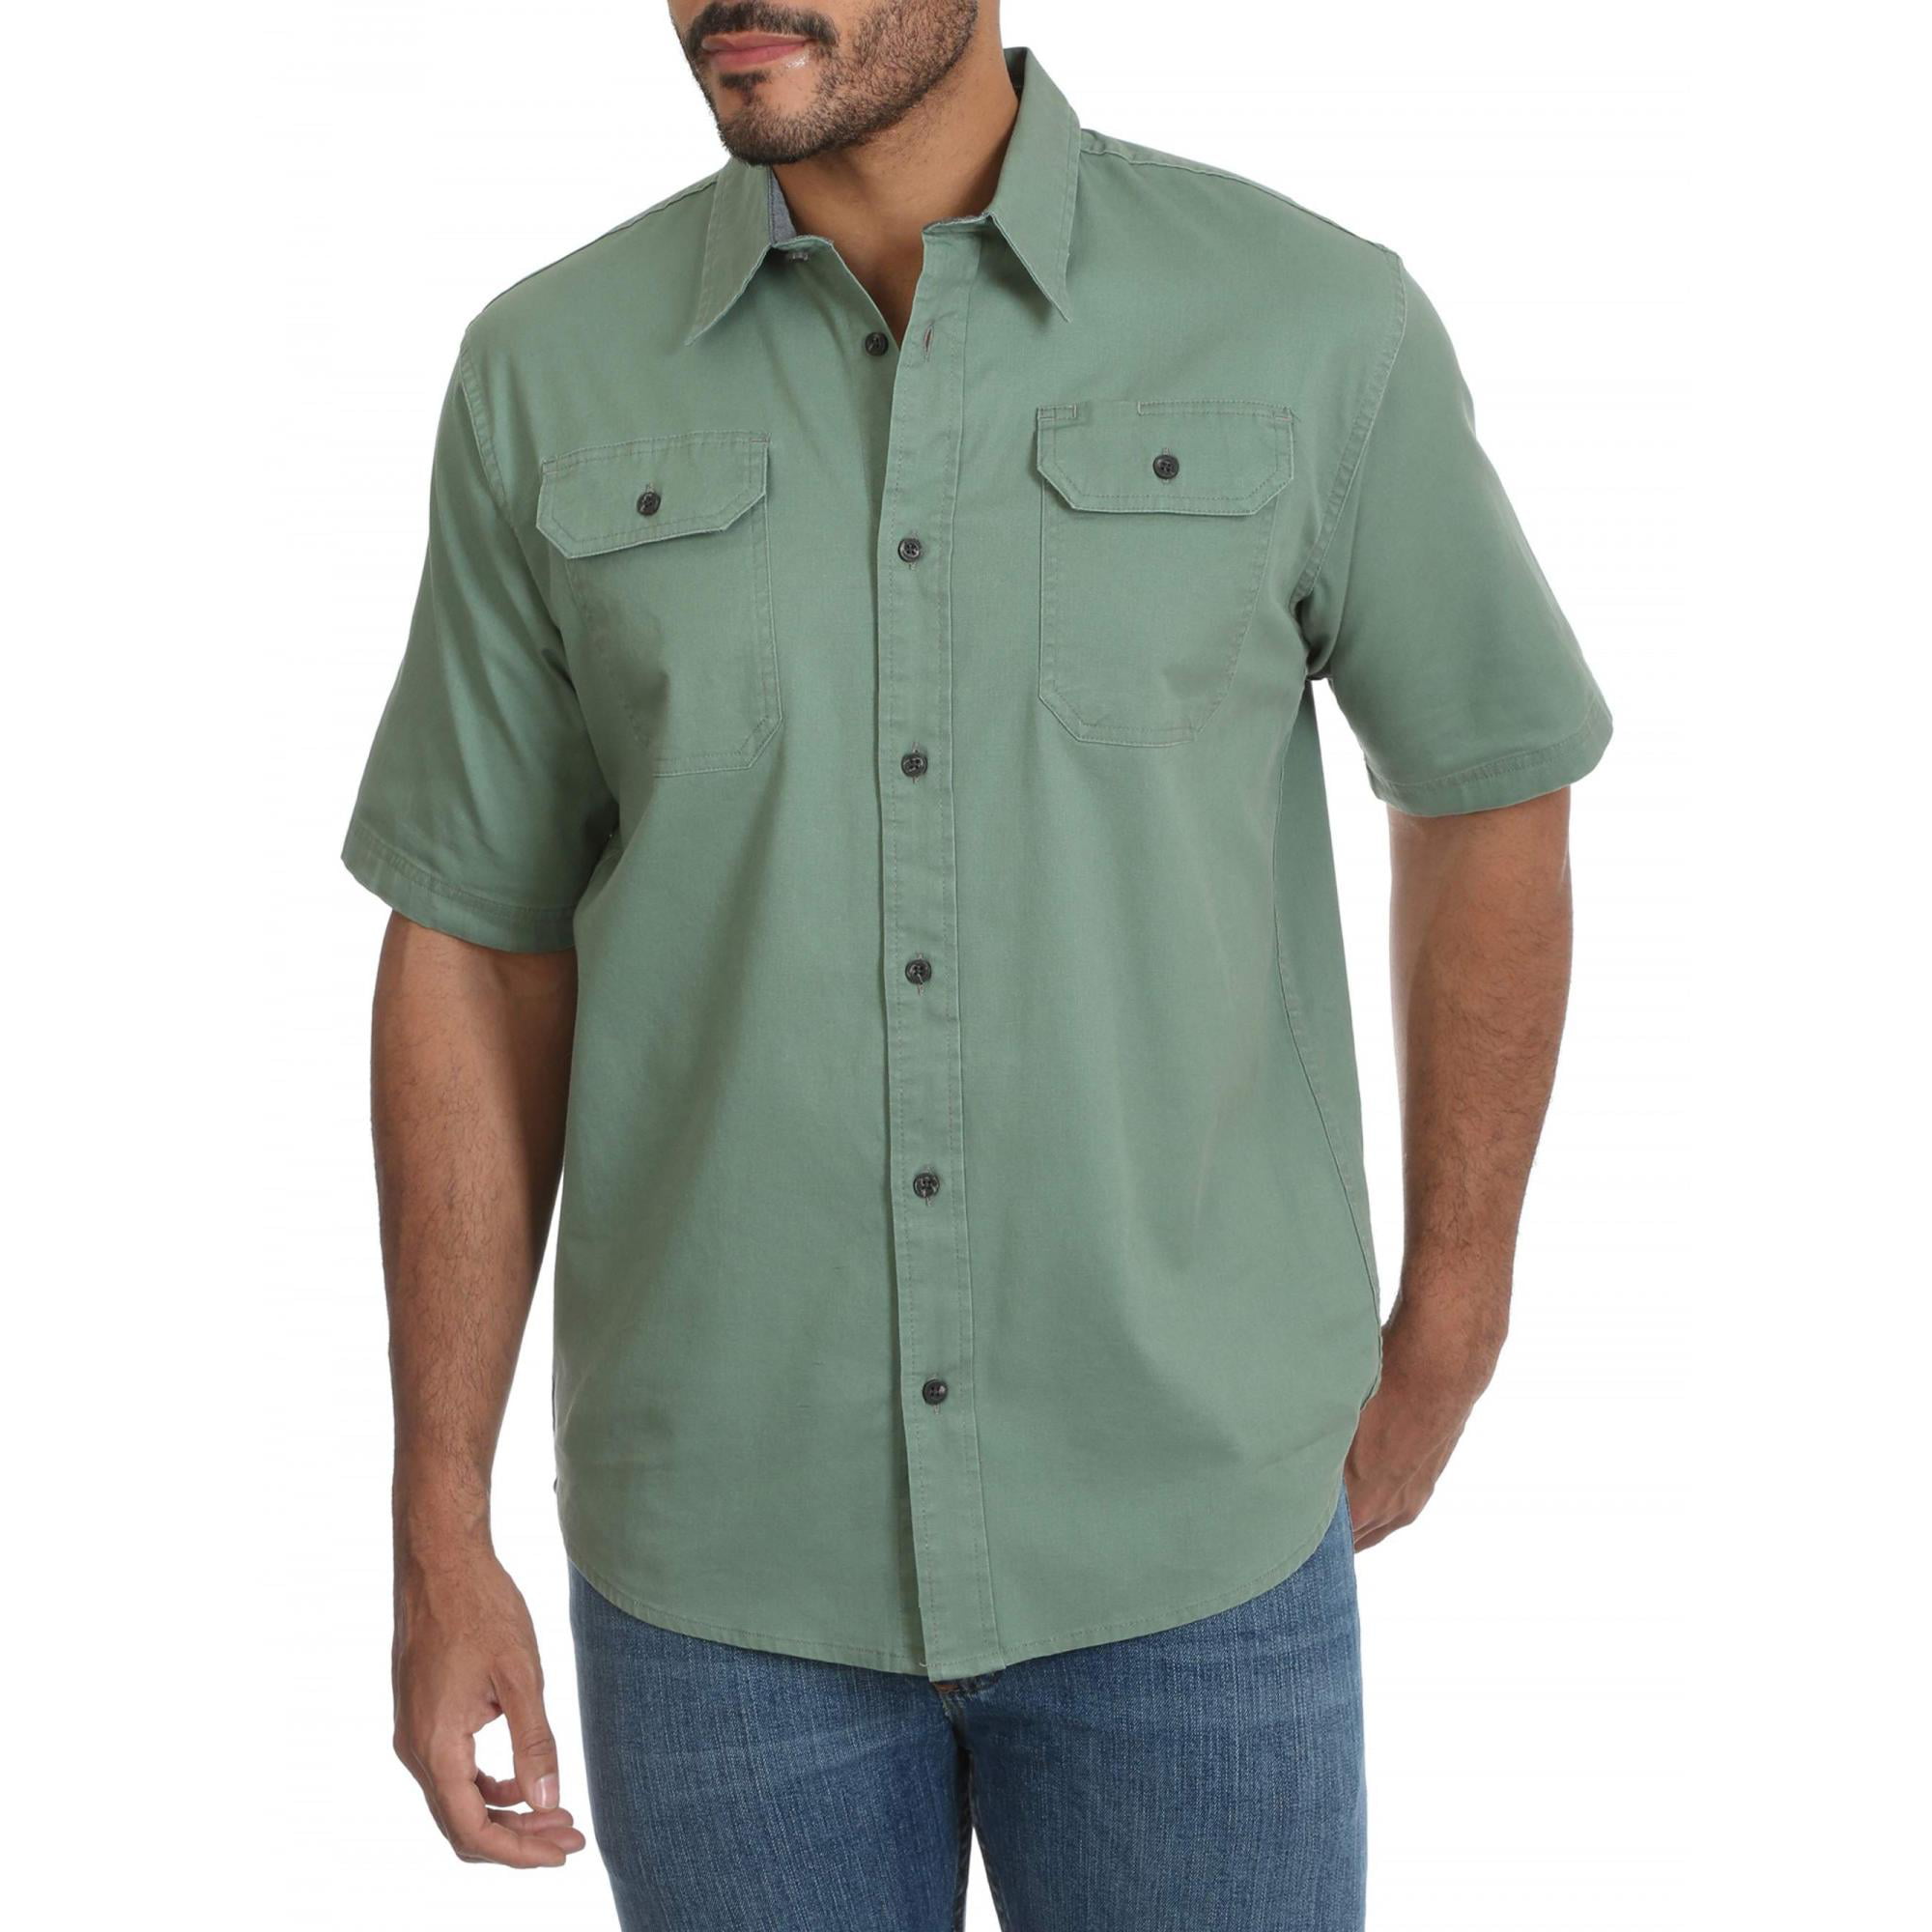 OTW Men Casual Button Up Short Sleeve Regular Fit Pockets Denim Work Western Shirt